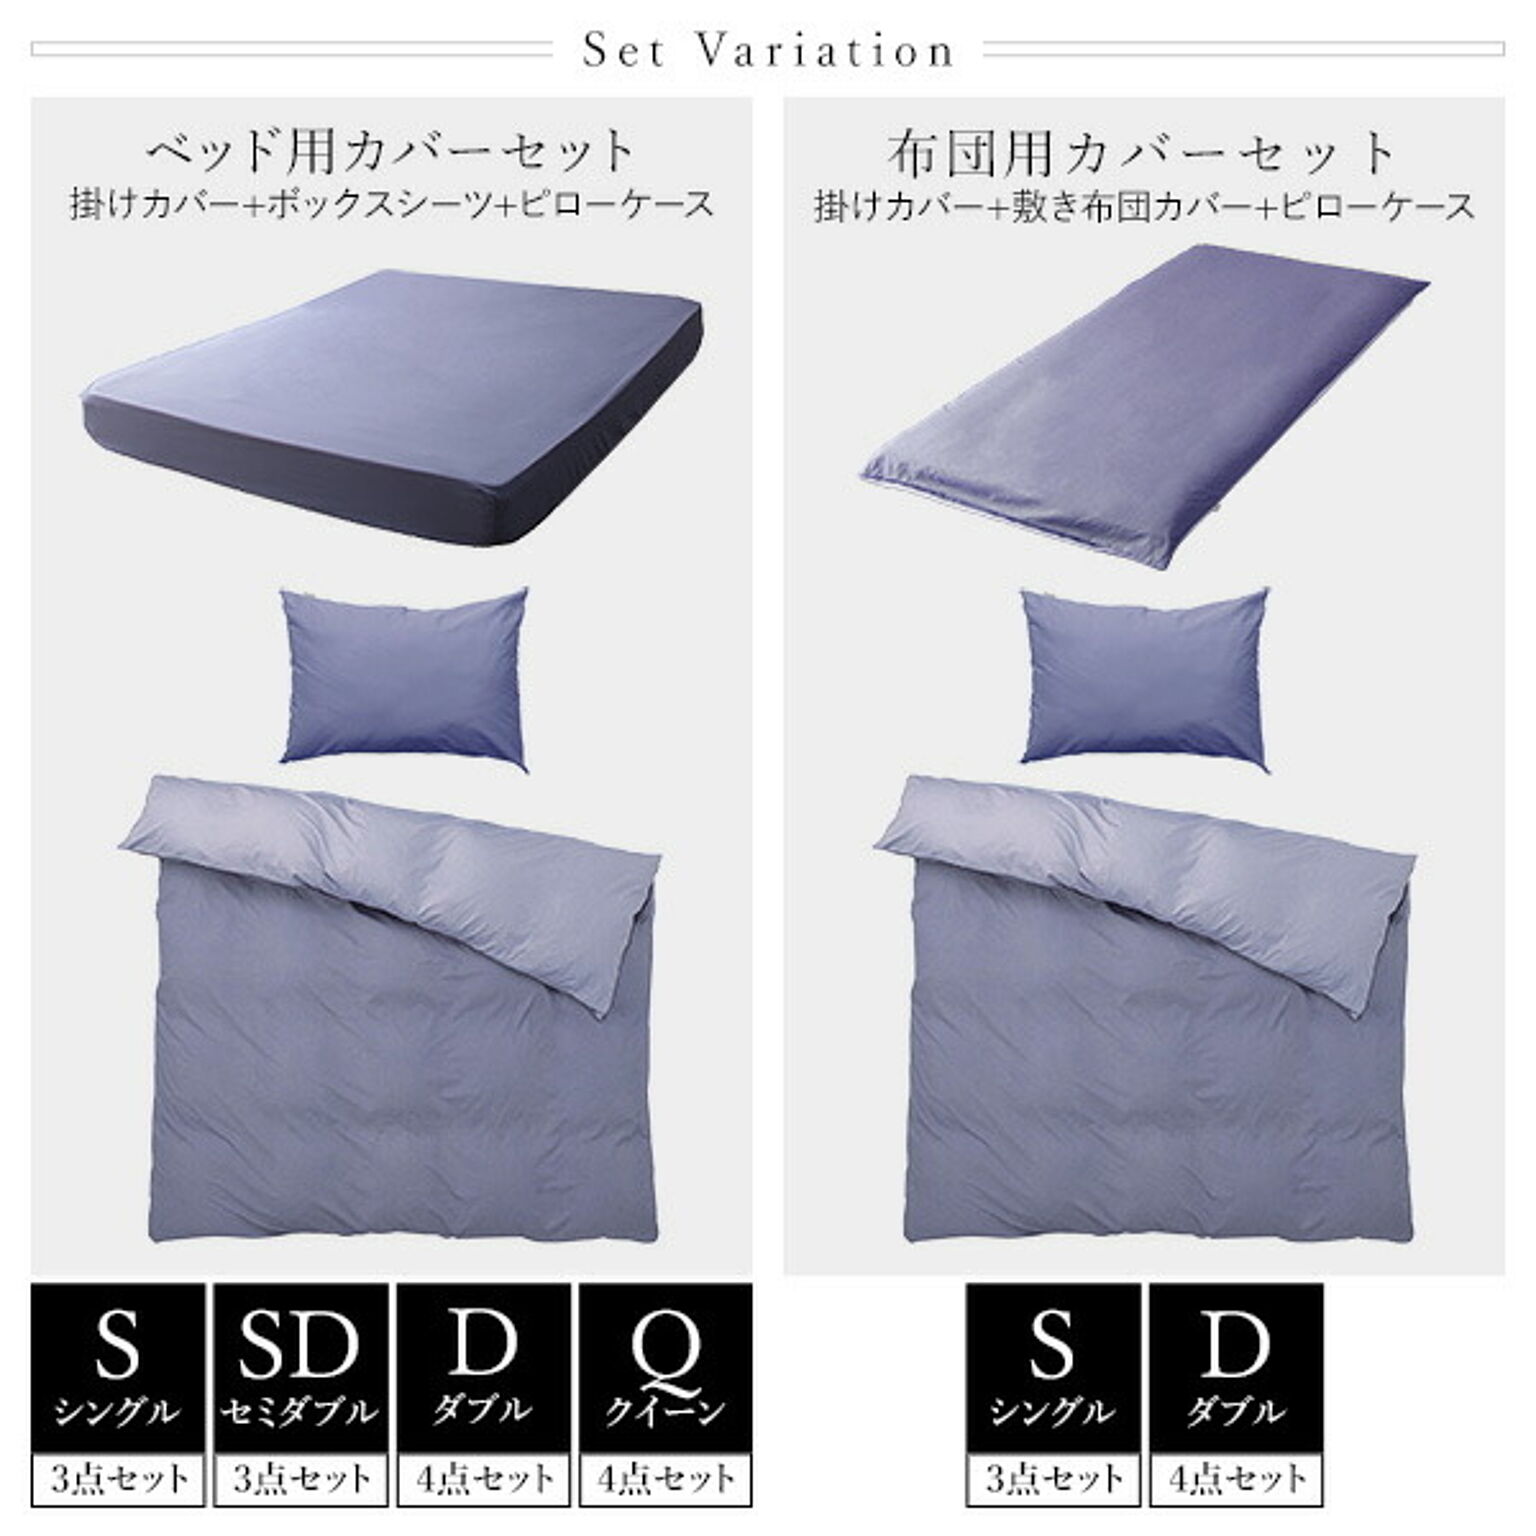 日本製 シルク加工 綿100％ ベッド用カバーセット ダブル 4点セット掛けカバー・ボックスシーツ・ピローケース2P アップルグリーン・ミントグリーン  おしゃれ ベッドカバー  D シンプル 北欧